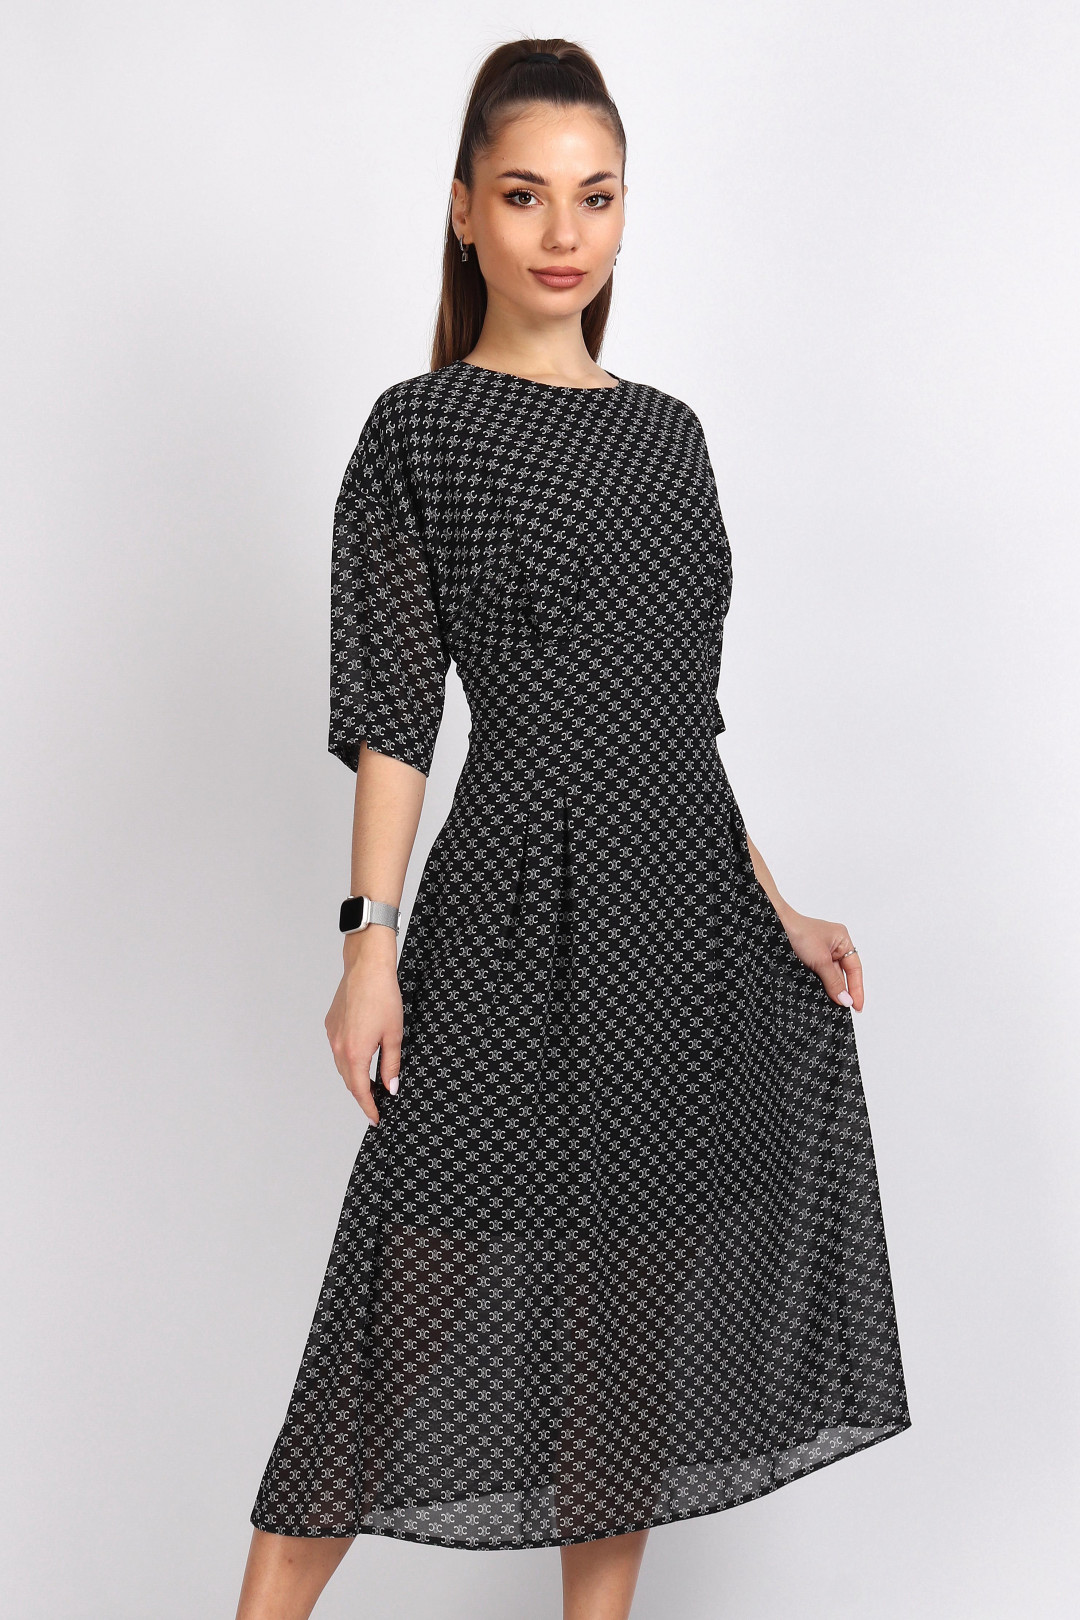 Платье МиА-Мода 1342-6 черно-белый принт